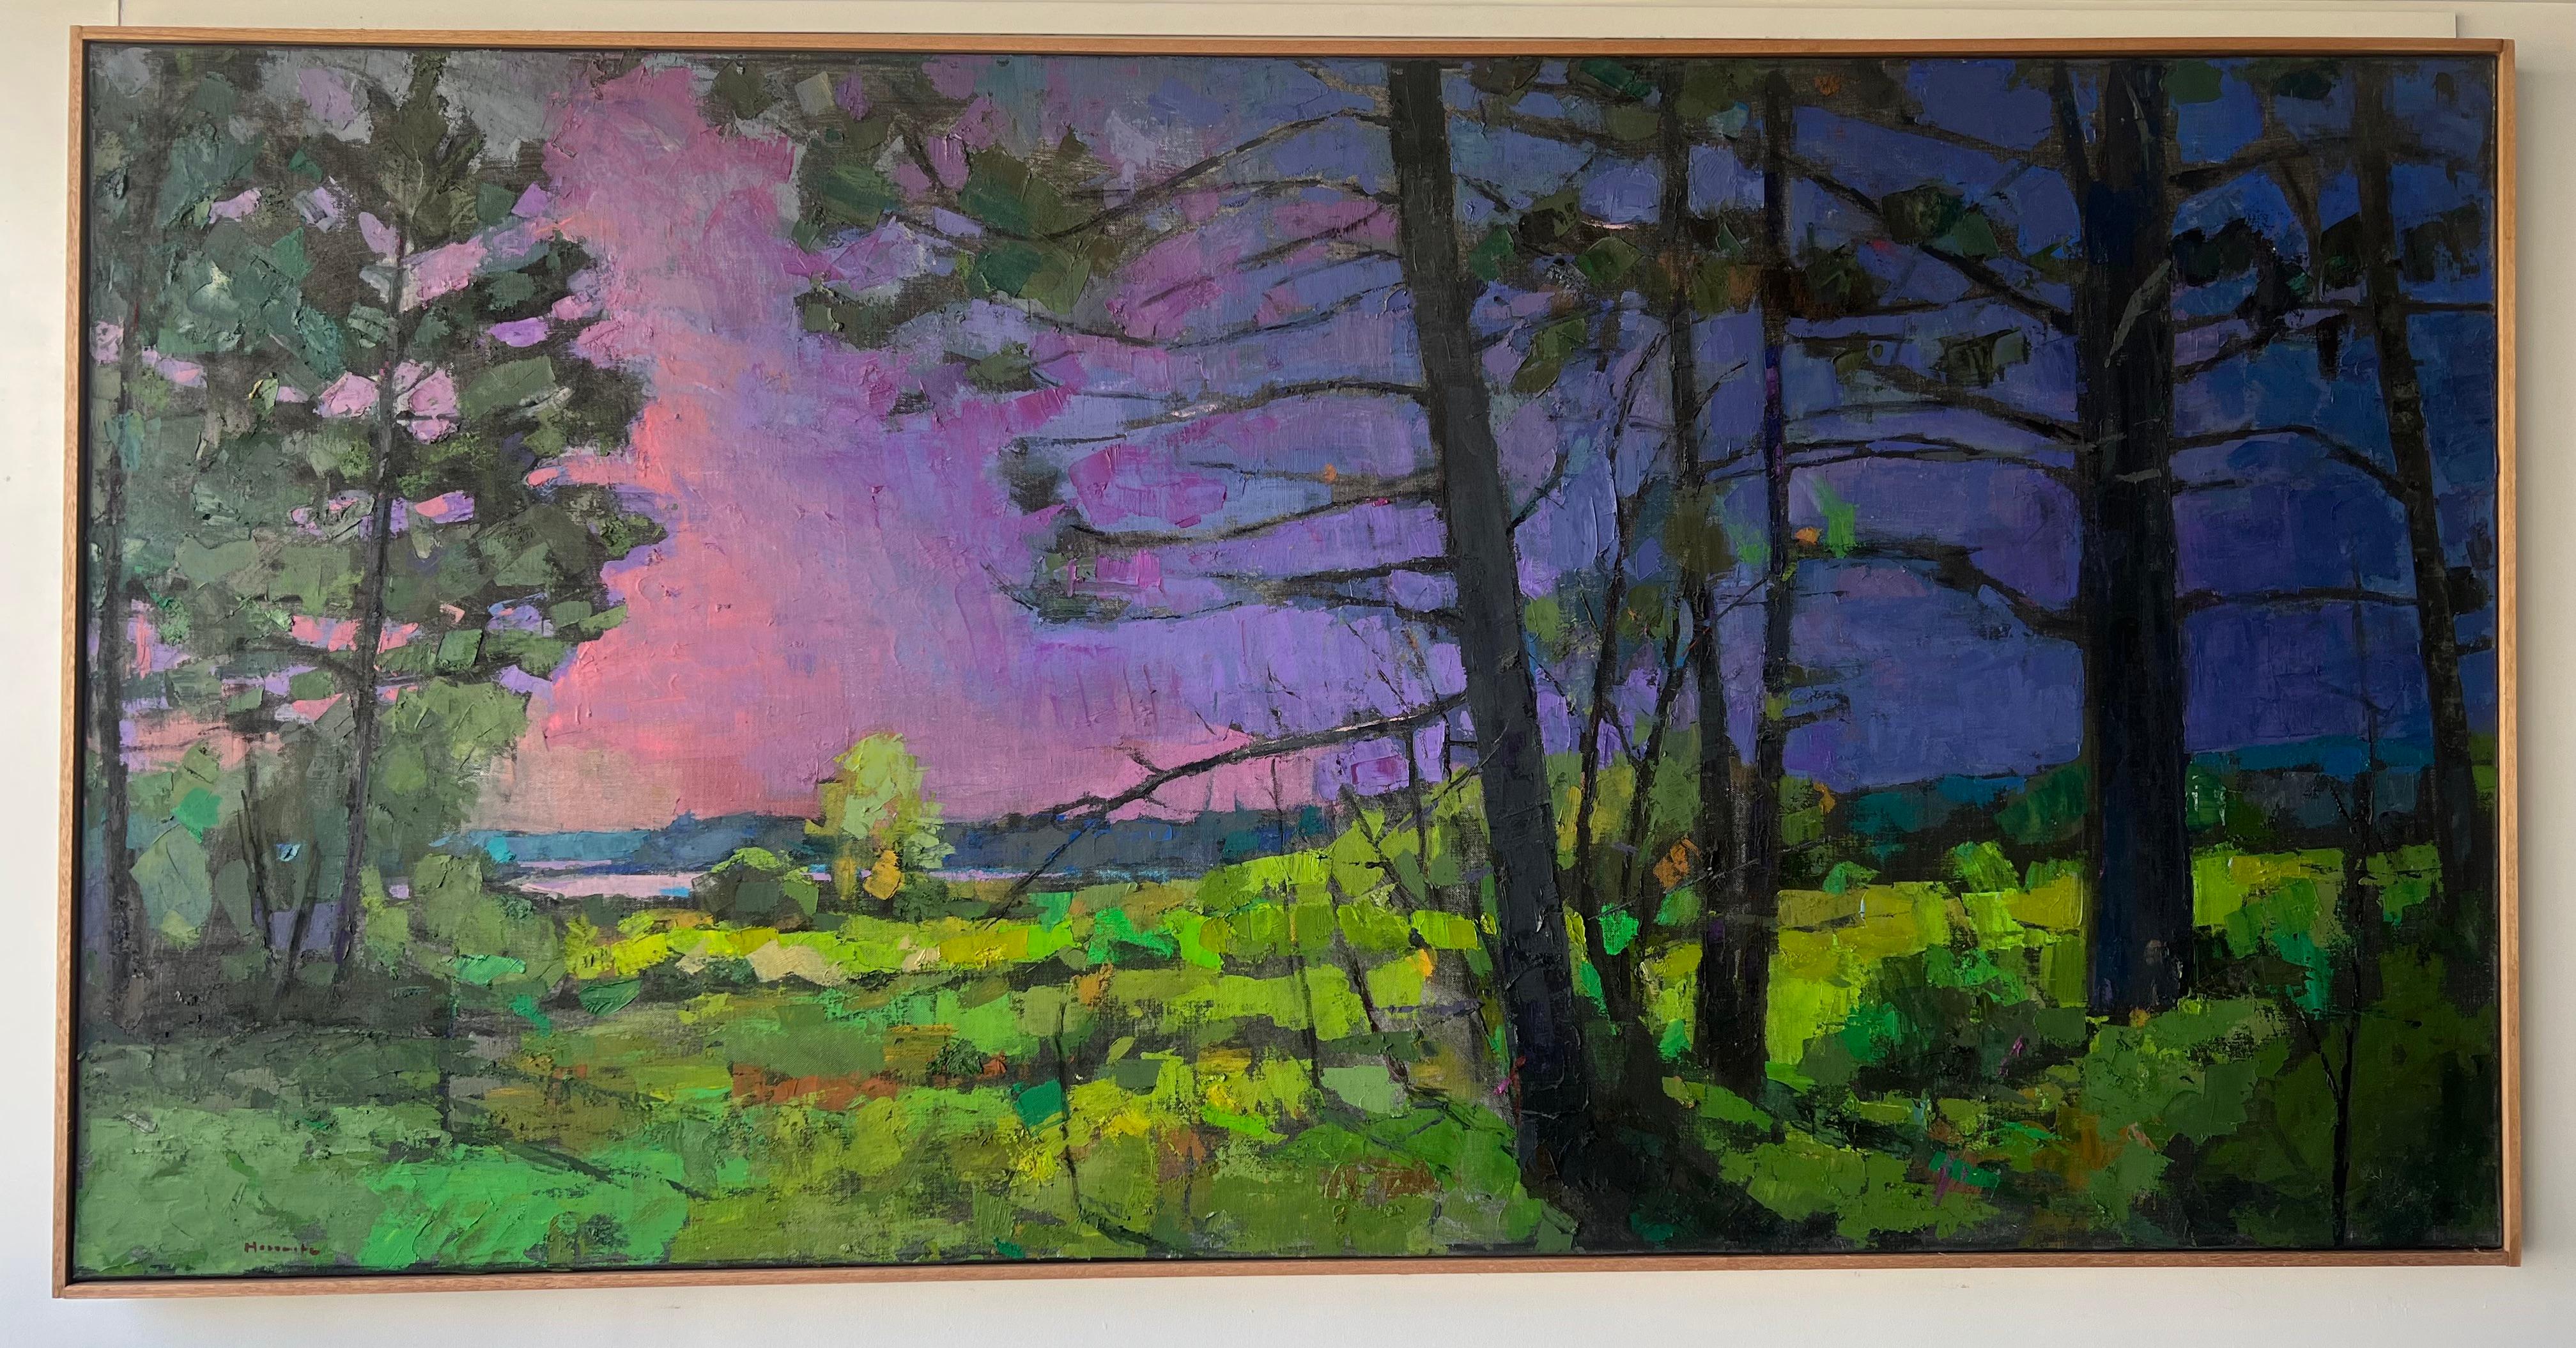 Peinture à l'huile « Moore Habitat II » à travers les bois, eau et ciel rose au loin - Painting de Larry Horowitz